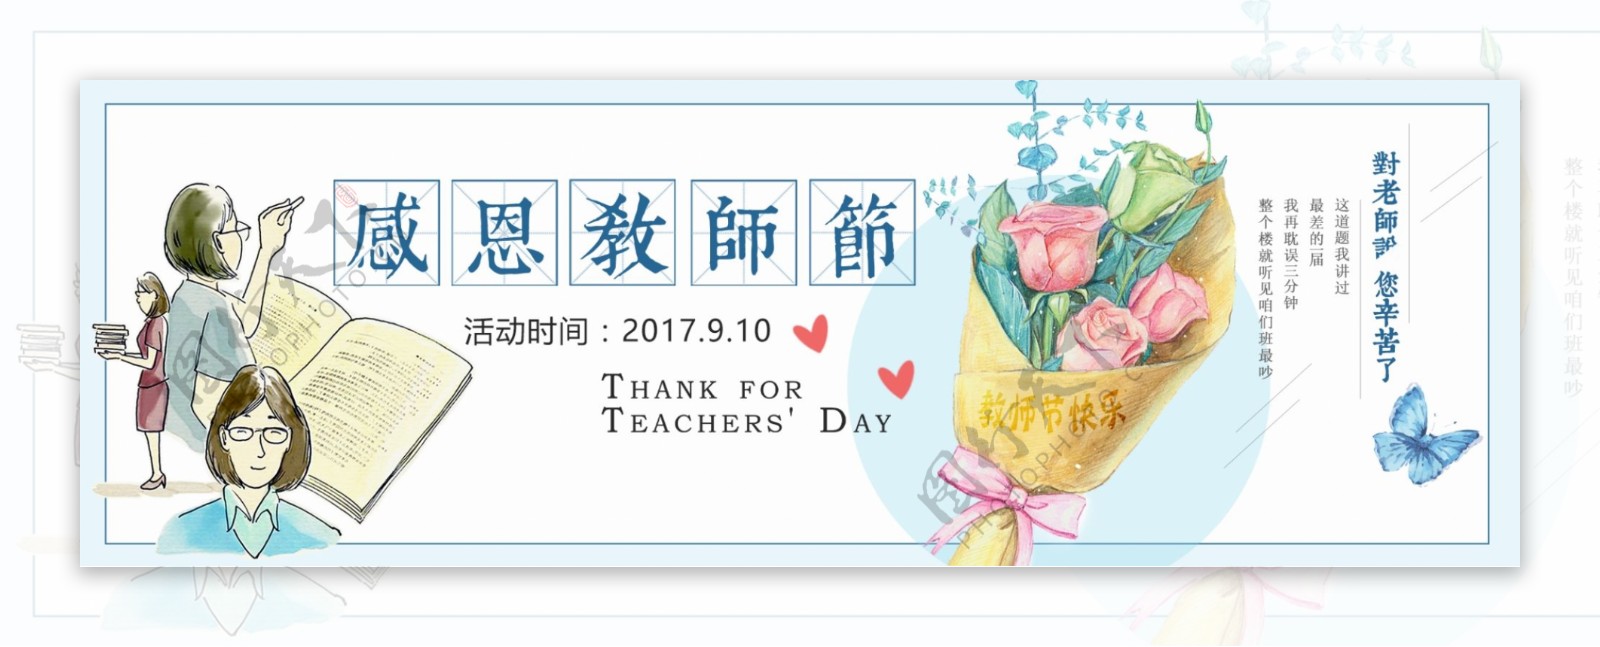 电商淘宝天猫感恩教师节促销海报banner教师节模板